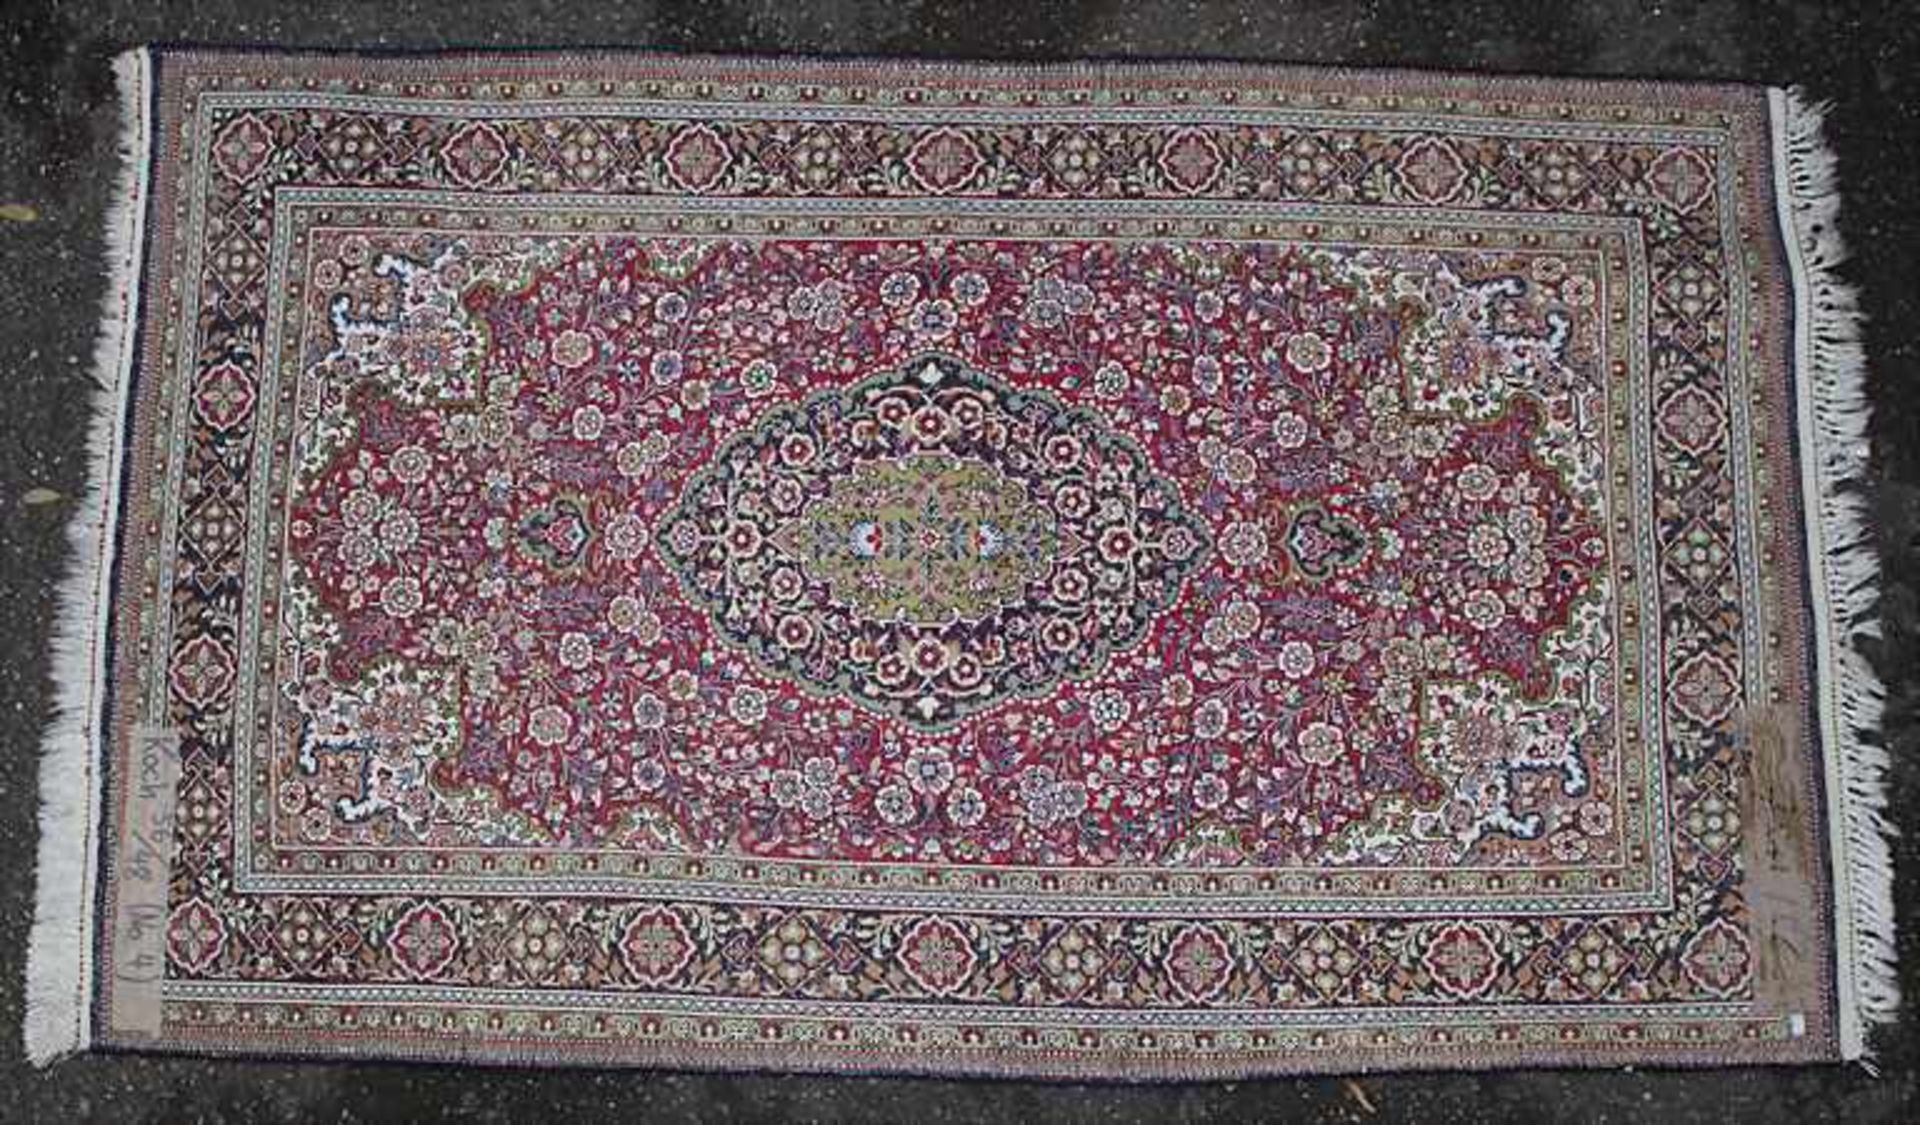 Seidenteppich / A silk carpet - Bild 2 aus 3